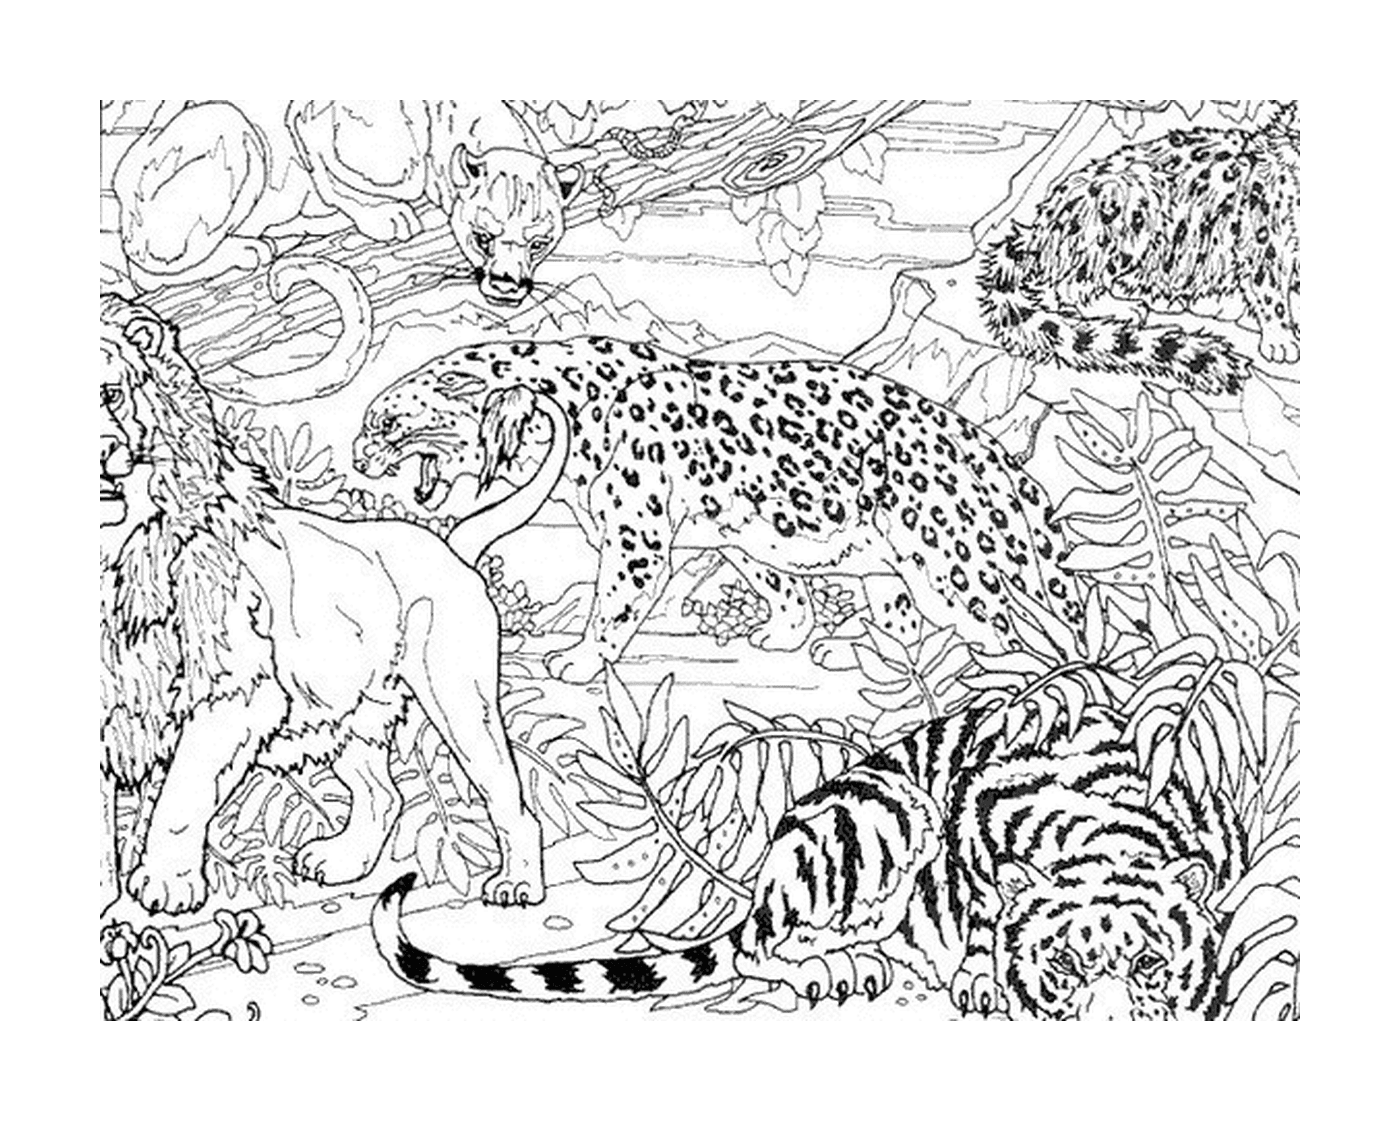  丛林中一只豹和两只老虎 